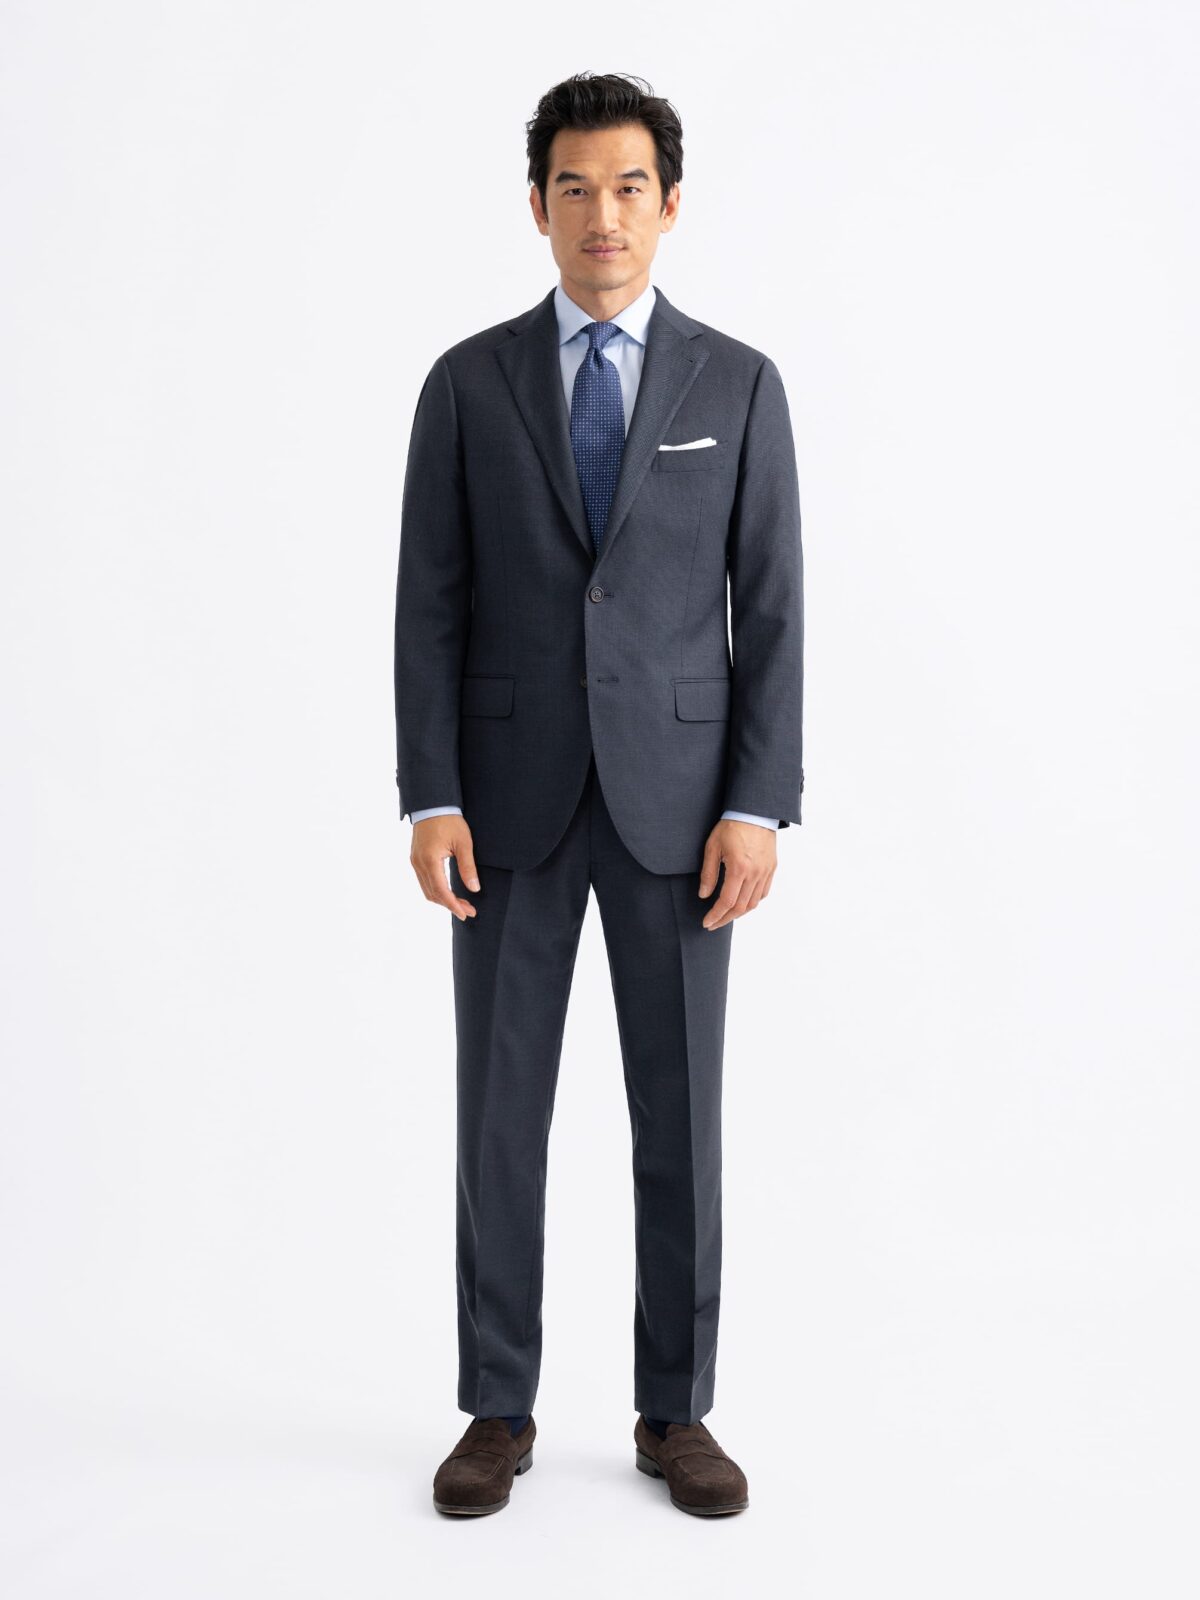 Men's Suits  Custom Suits - Proper Cloth